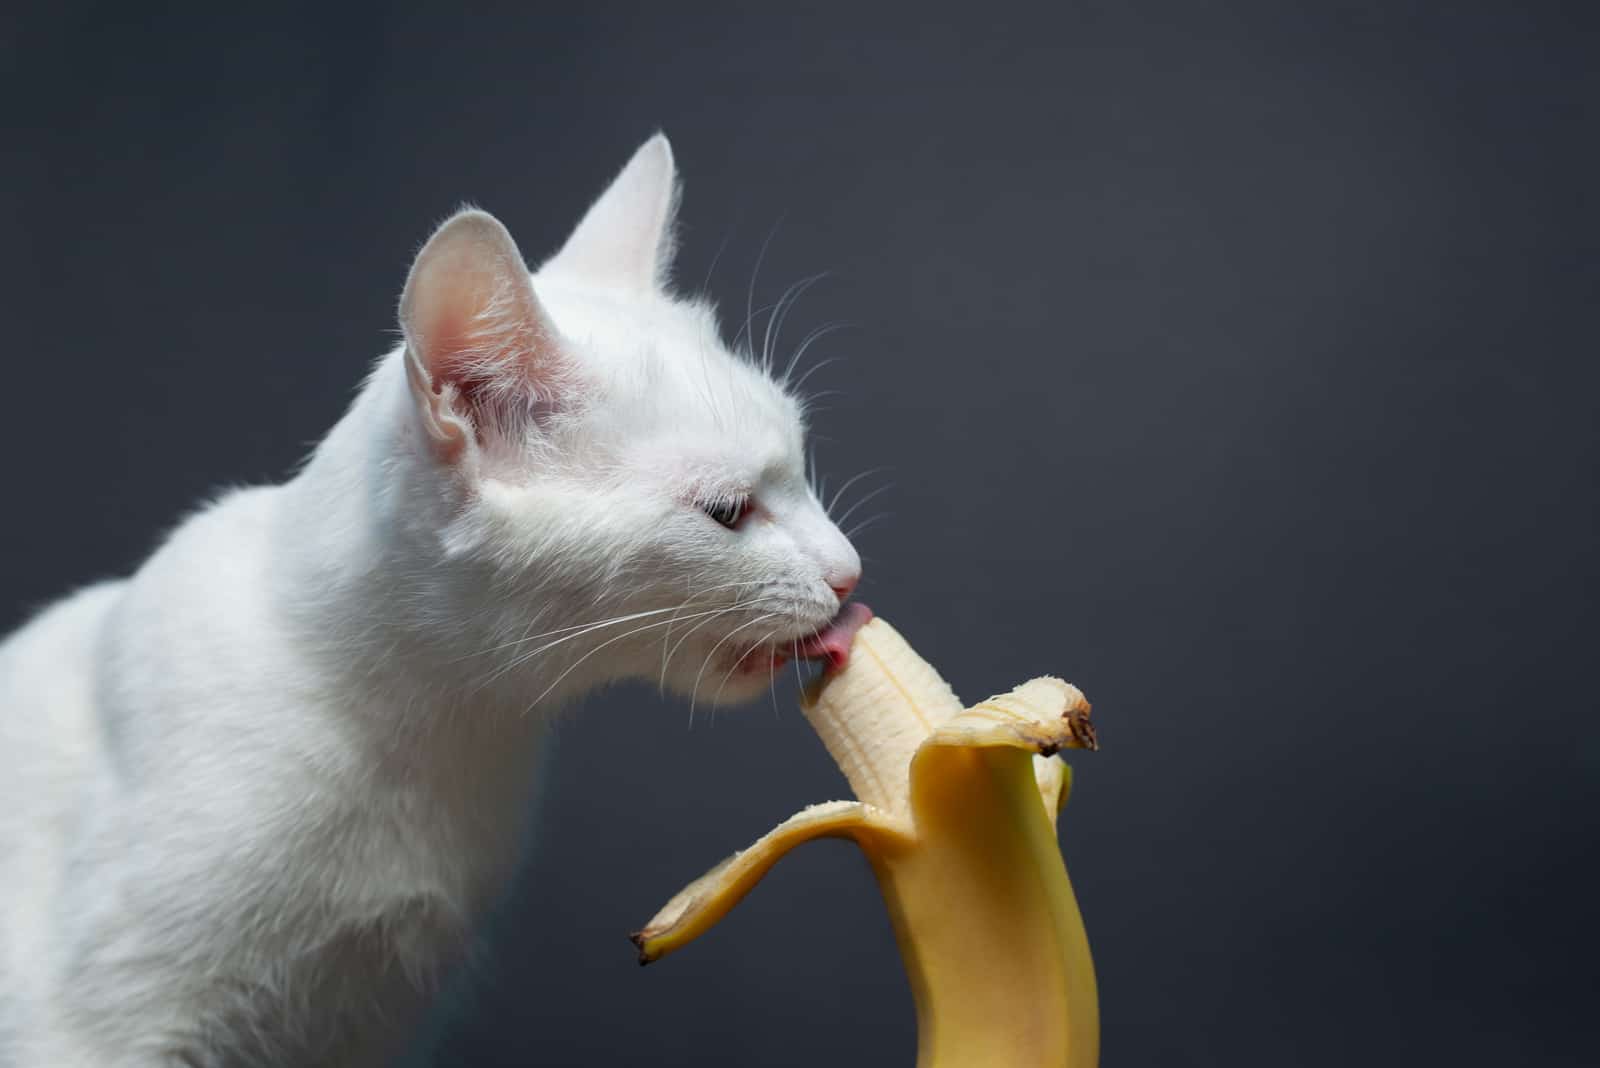 White cat eats a banana